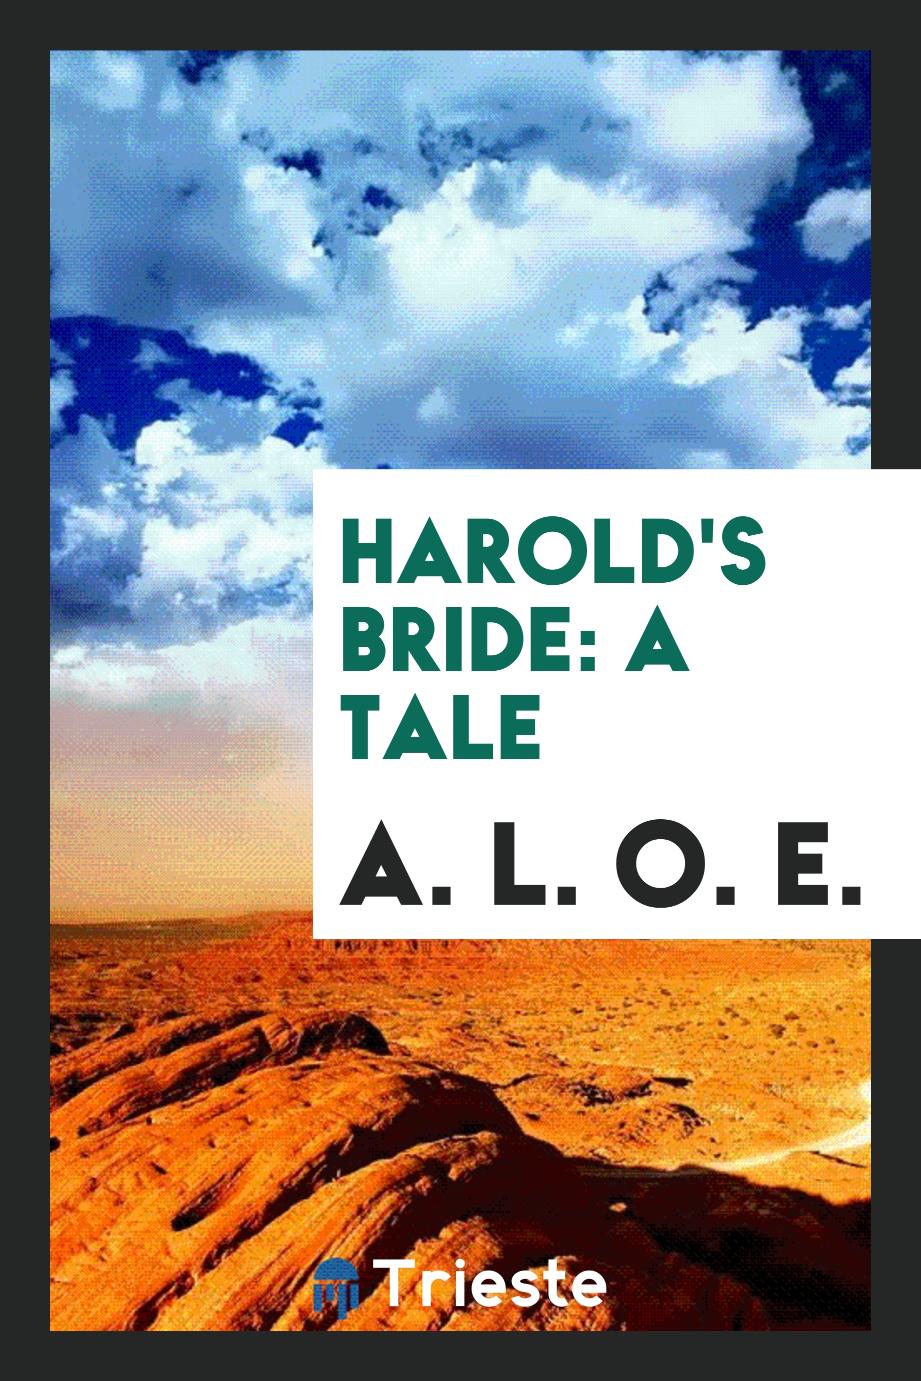 Harold's bride: a tale